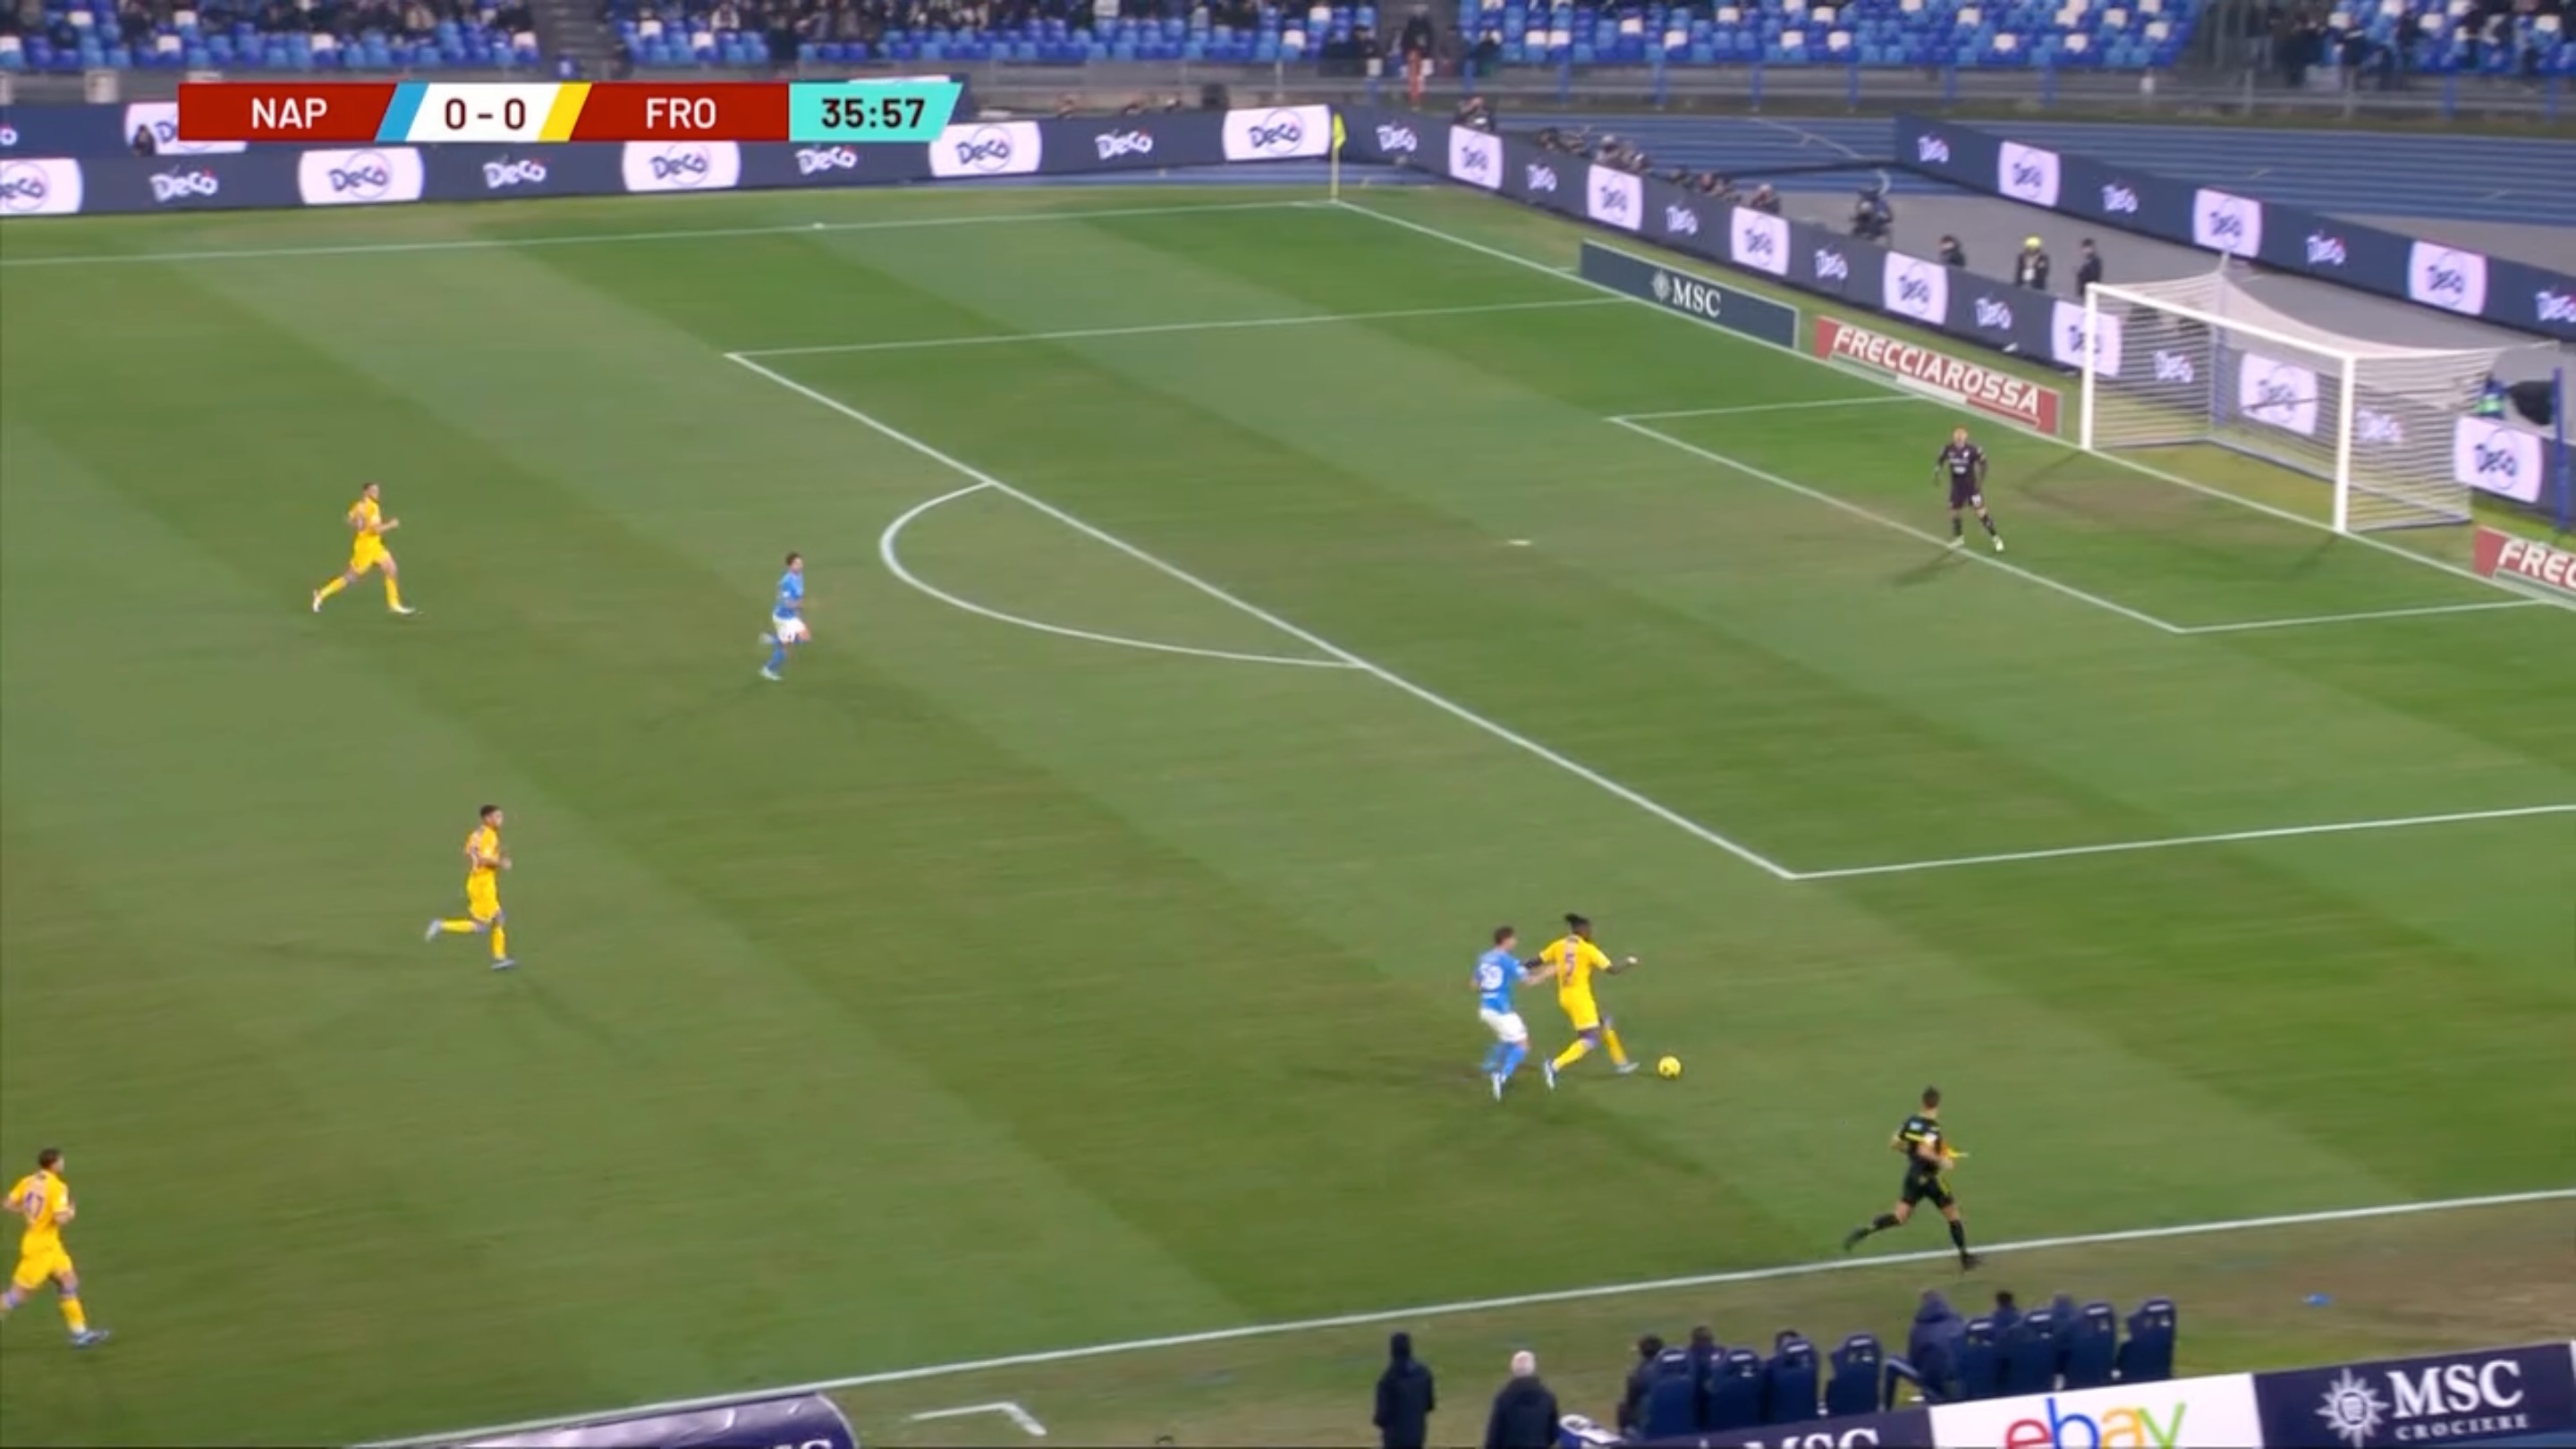 Napoli-Frosinone: il momento in cui Okoli serve Simeone avviando una nuova azione, che diventa il gol dell'1-0 dopo pochi secondi 